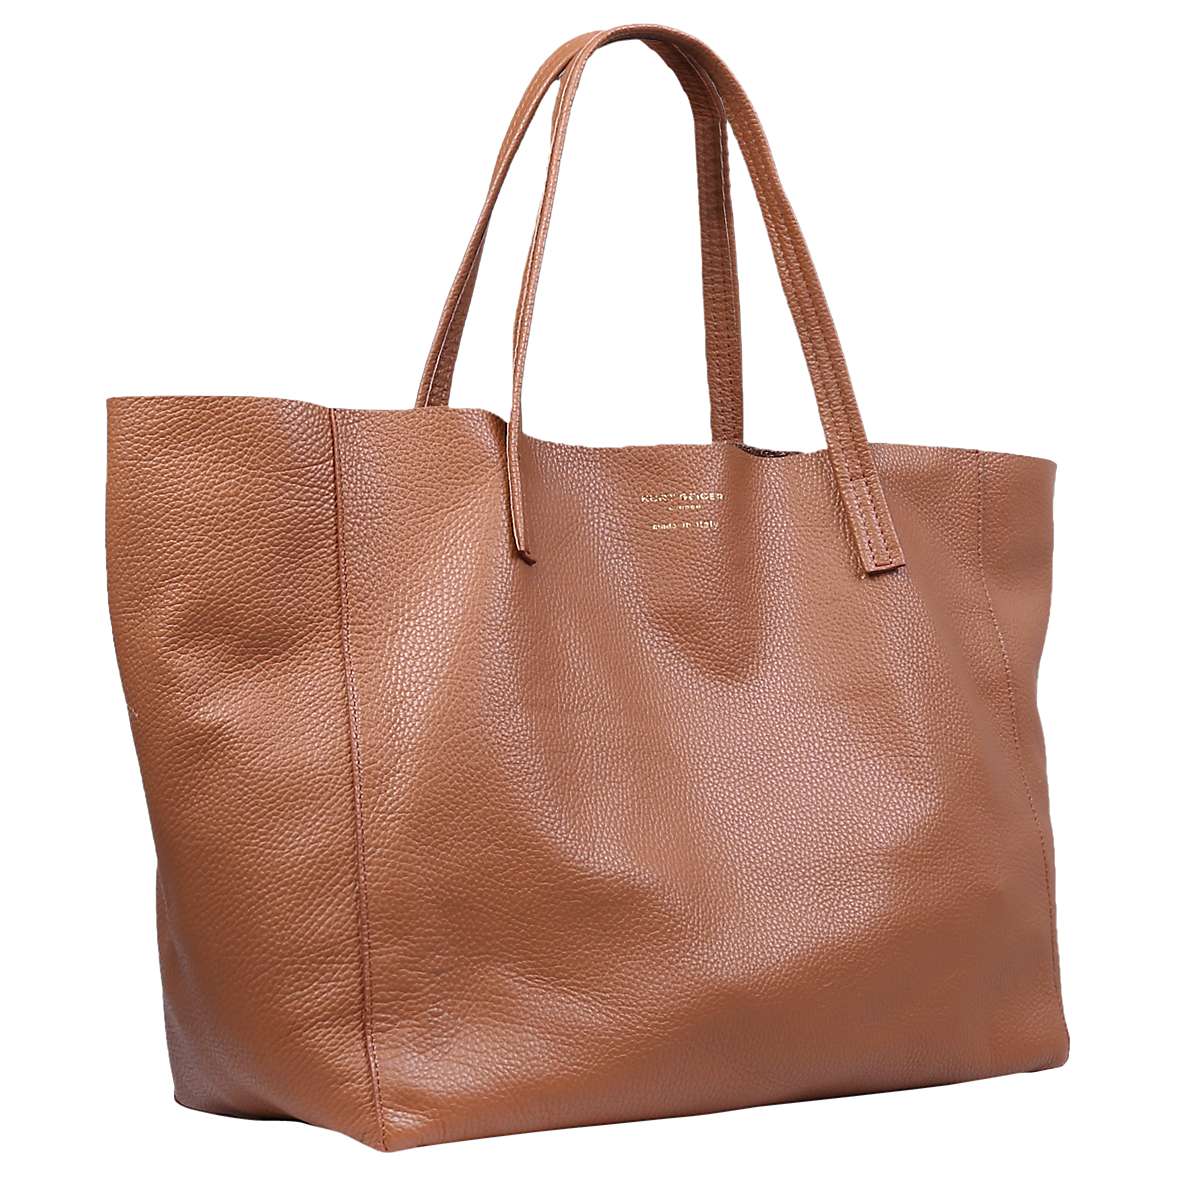 Buy Kurt Geiger London Violet Leather Tote Bag Online at johnlewis.com